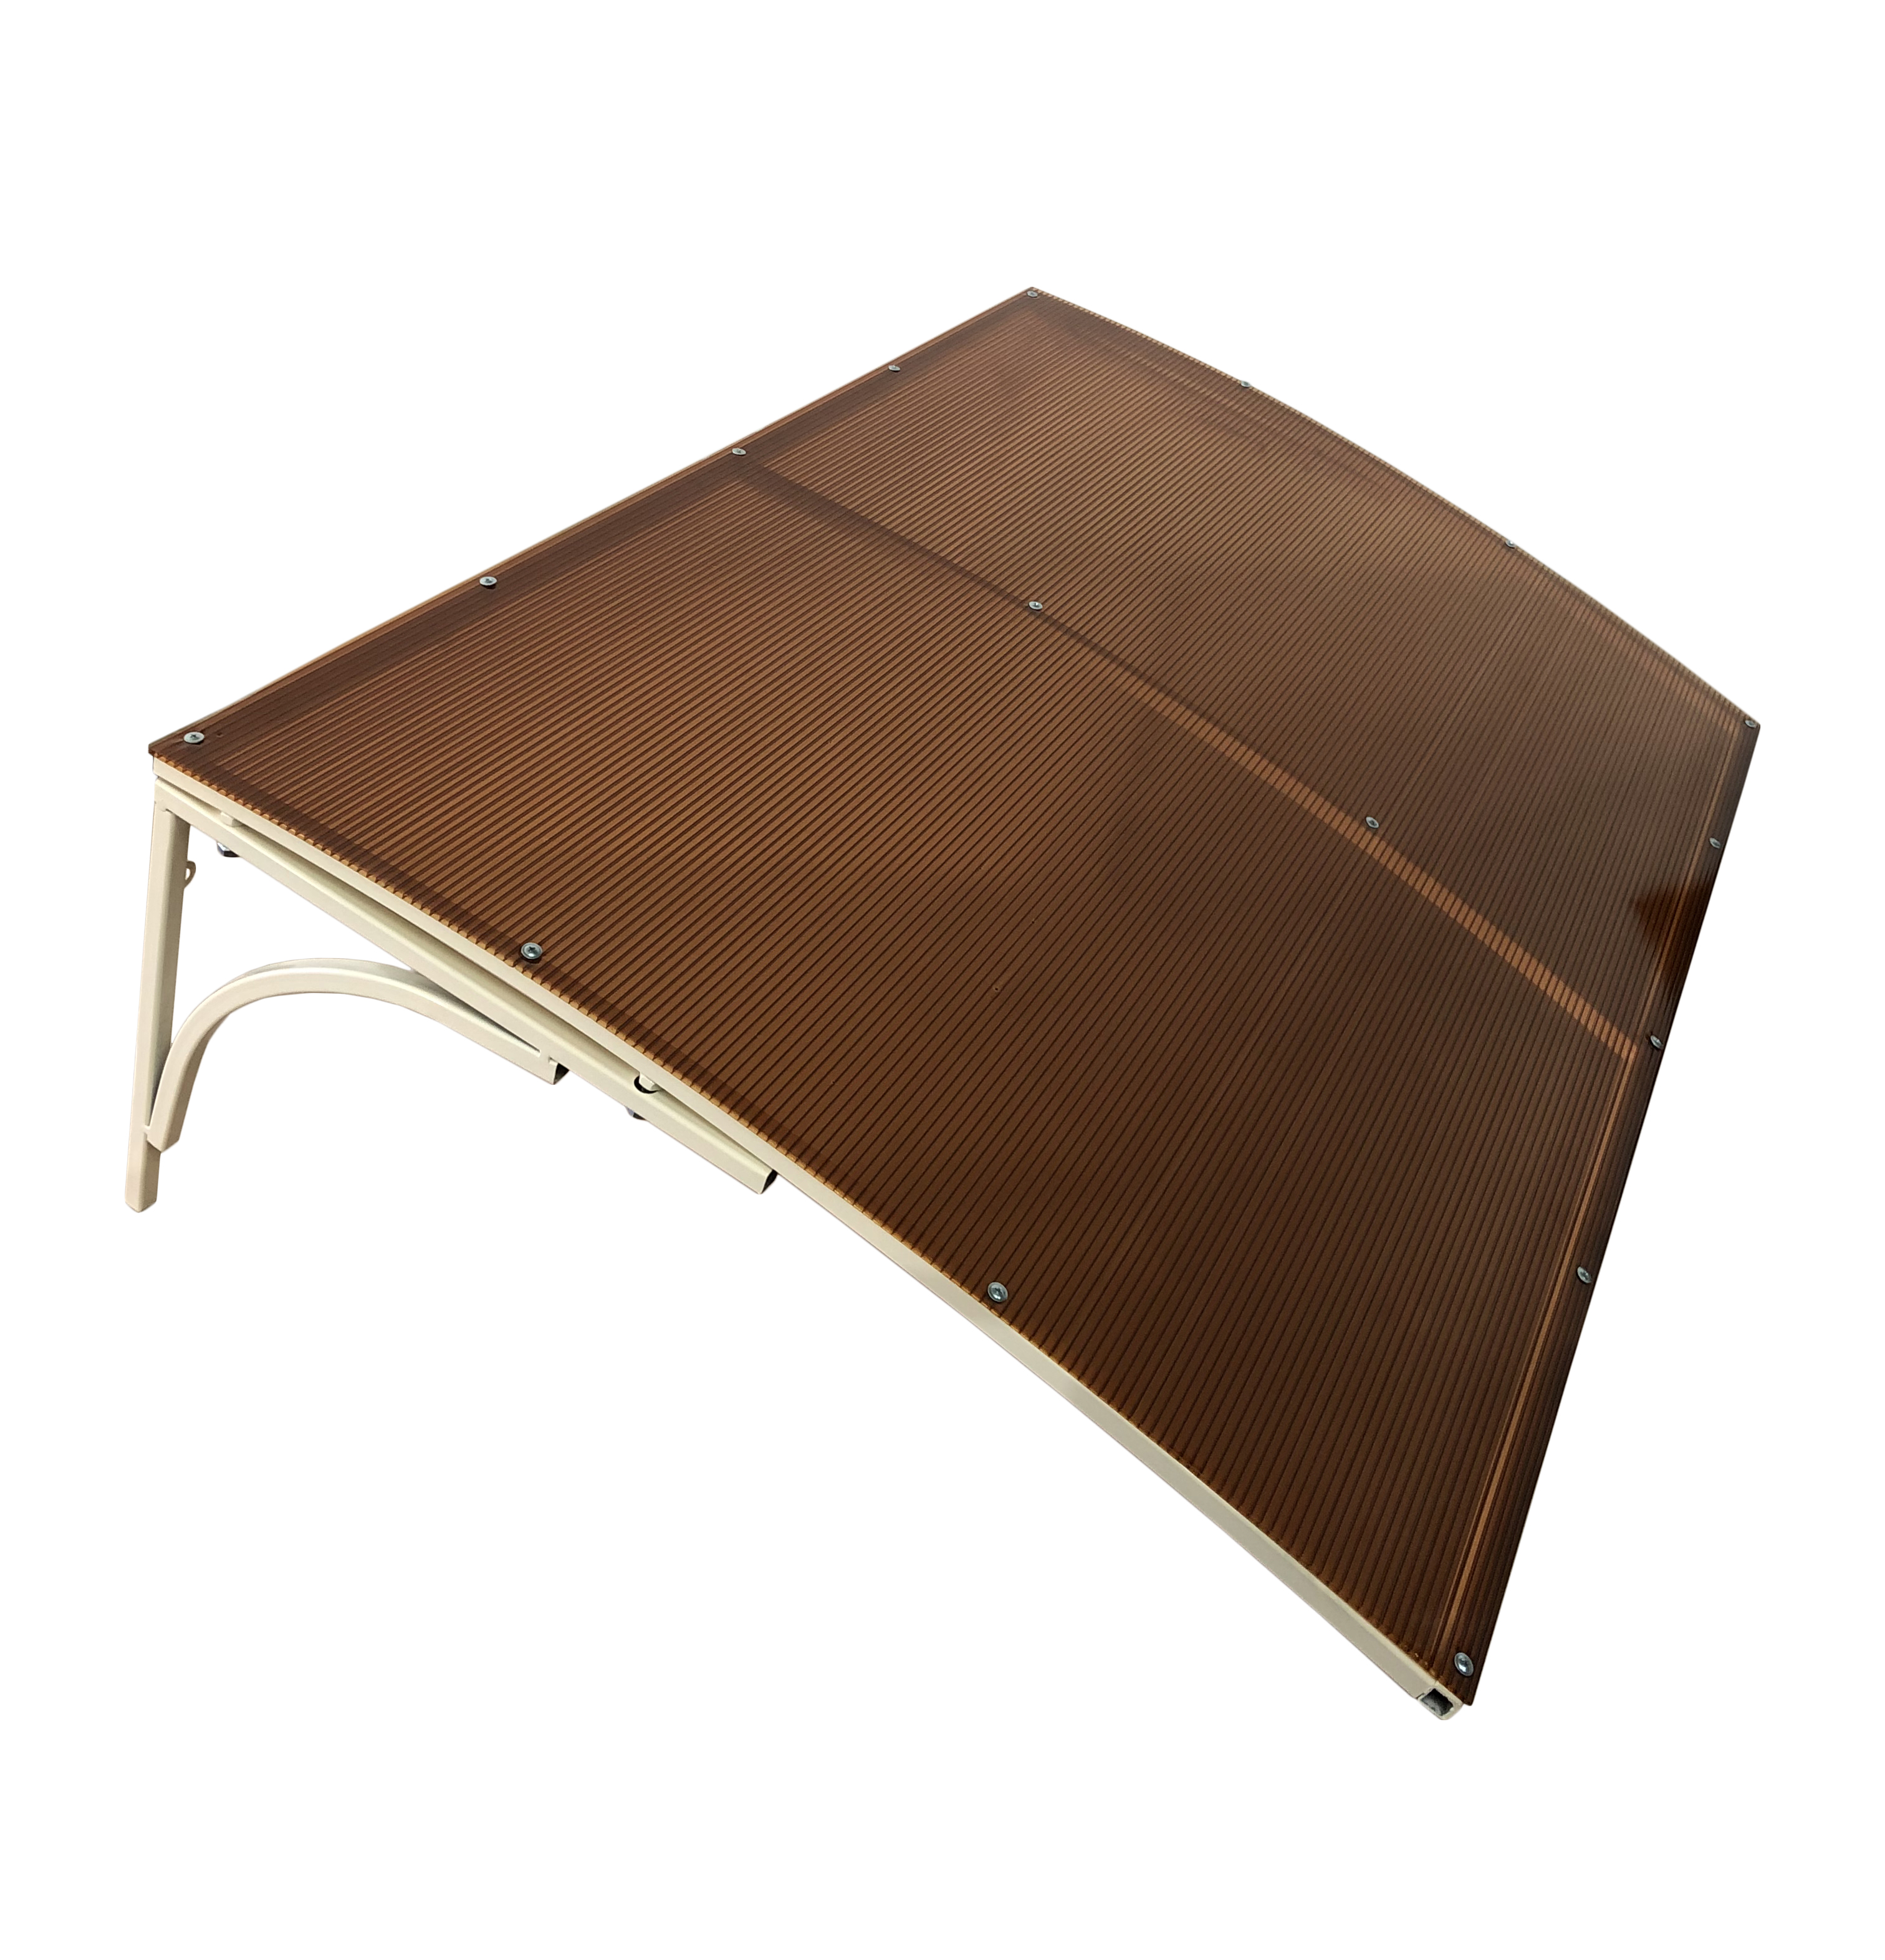 стол для дачи обеденный агп сан ремо коричневый 60х60х75 см Козырек над входной дверью ArtCore, YS71 бежевый каркас, коричневый поликарбонат